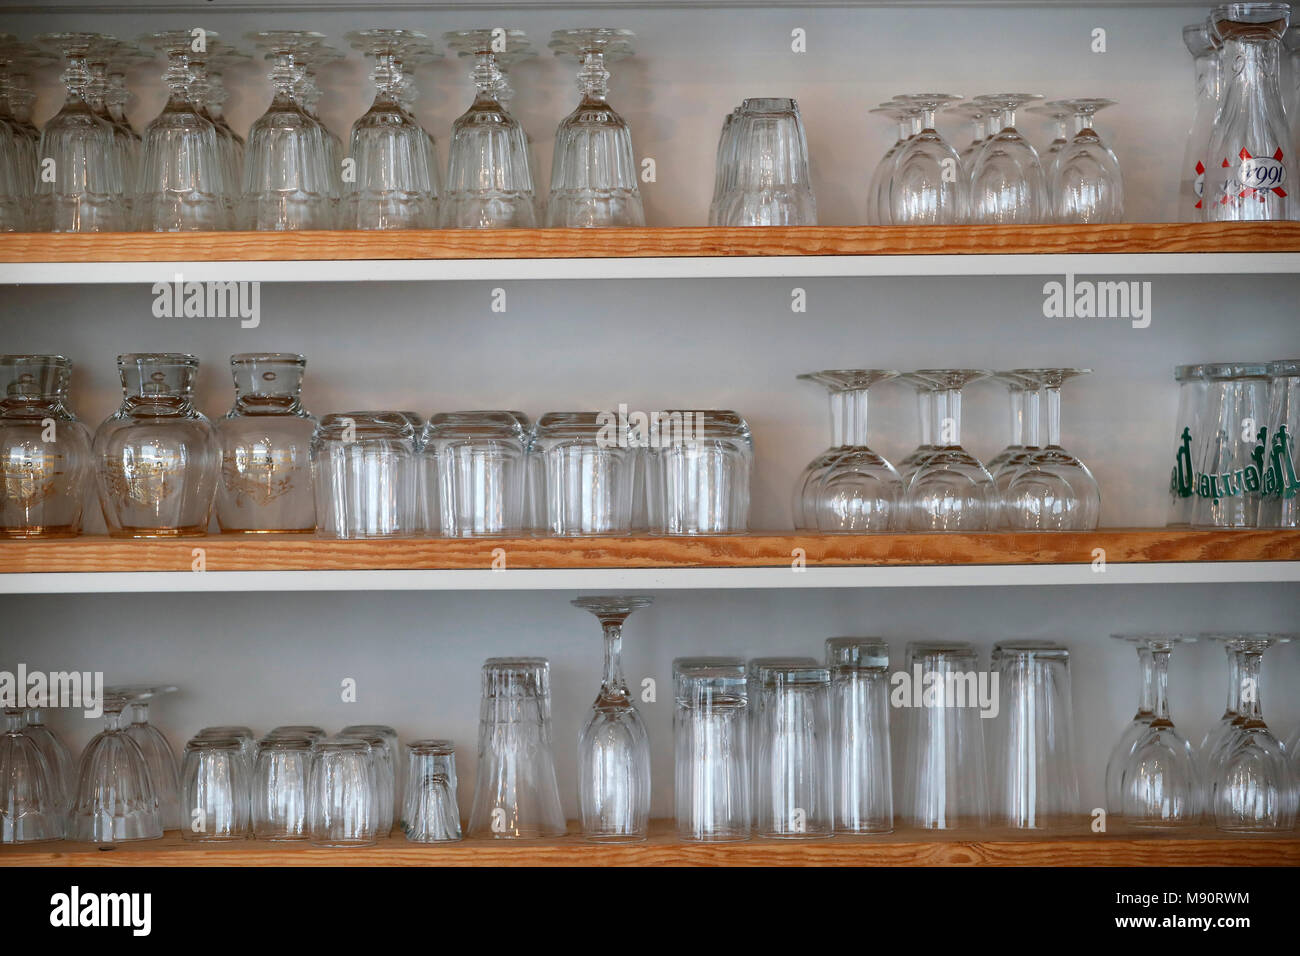 Verschiedene Gläser auf Bar Regal gestapelt Stockfotografie - Alamy